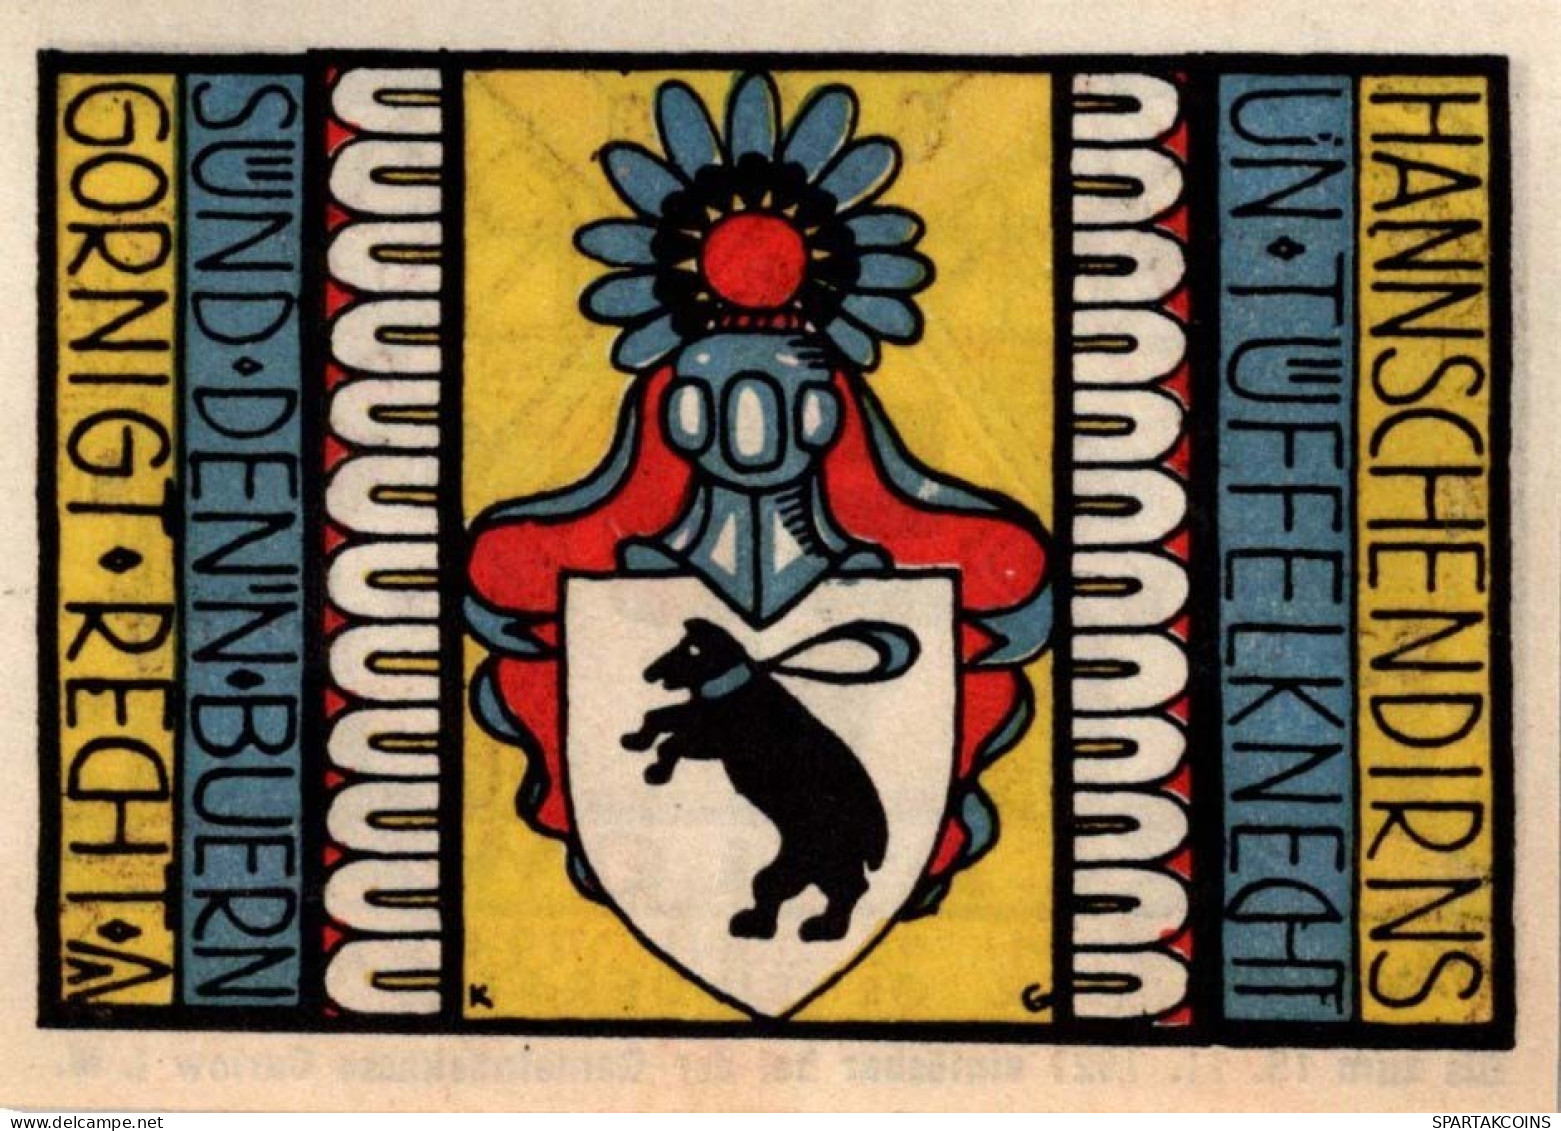 50 PFENNIG 1921 Stadt CARLOW Mecklenburg-Strelitz UNC DEUTSCHLAND Notgeld #PI090 - [11] Emissions Locales